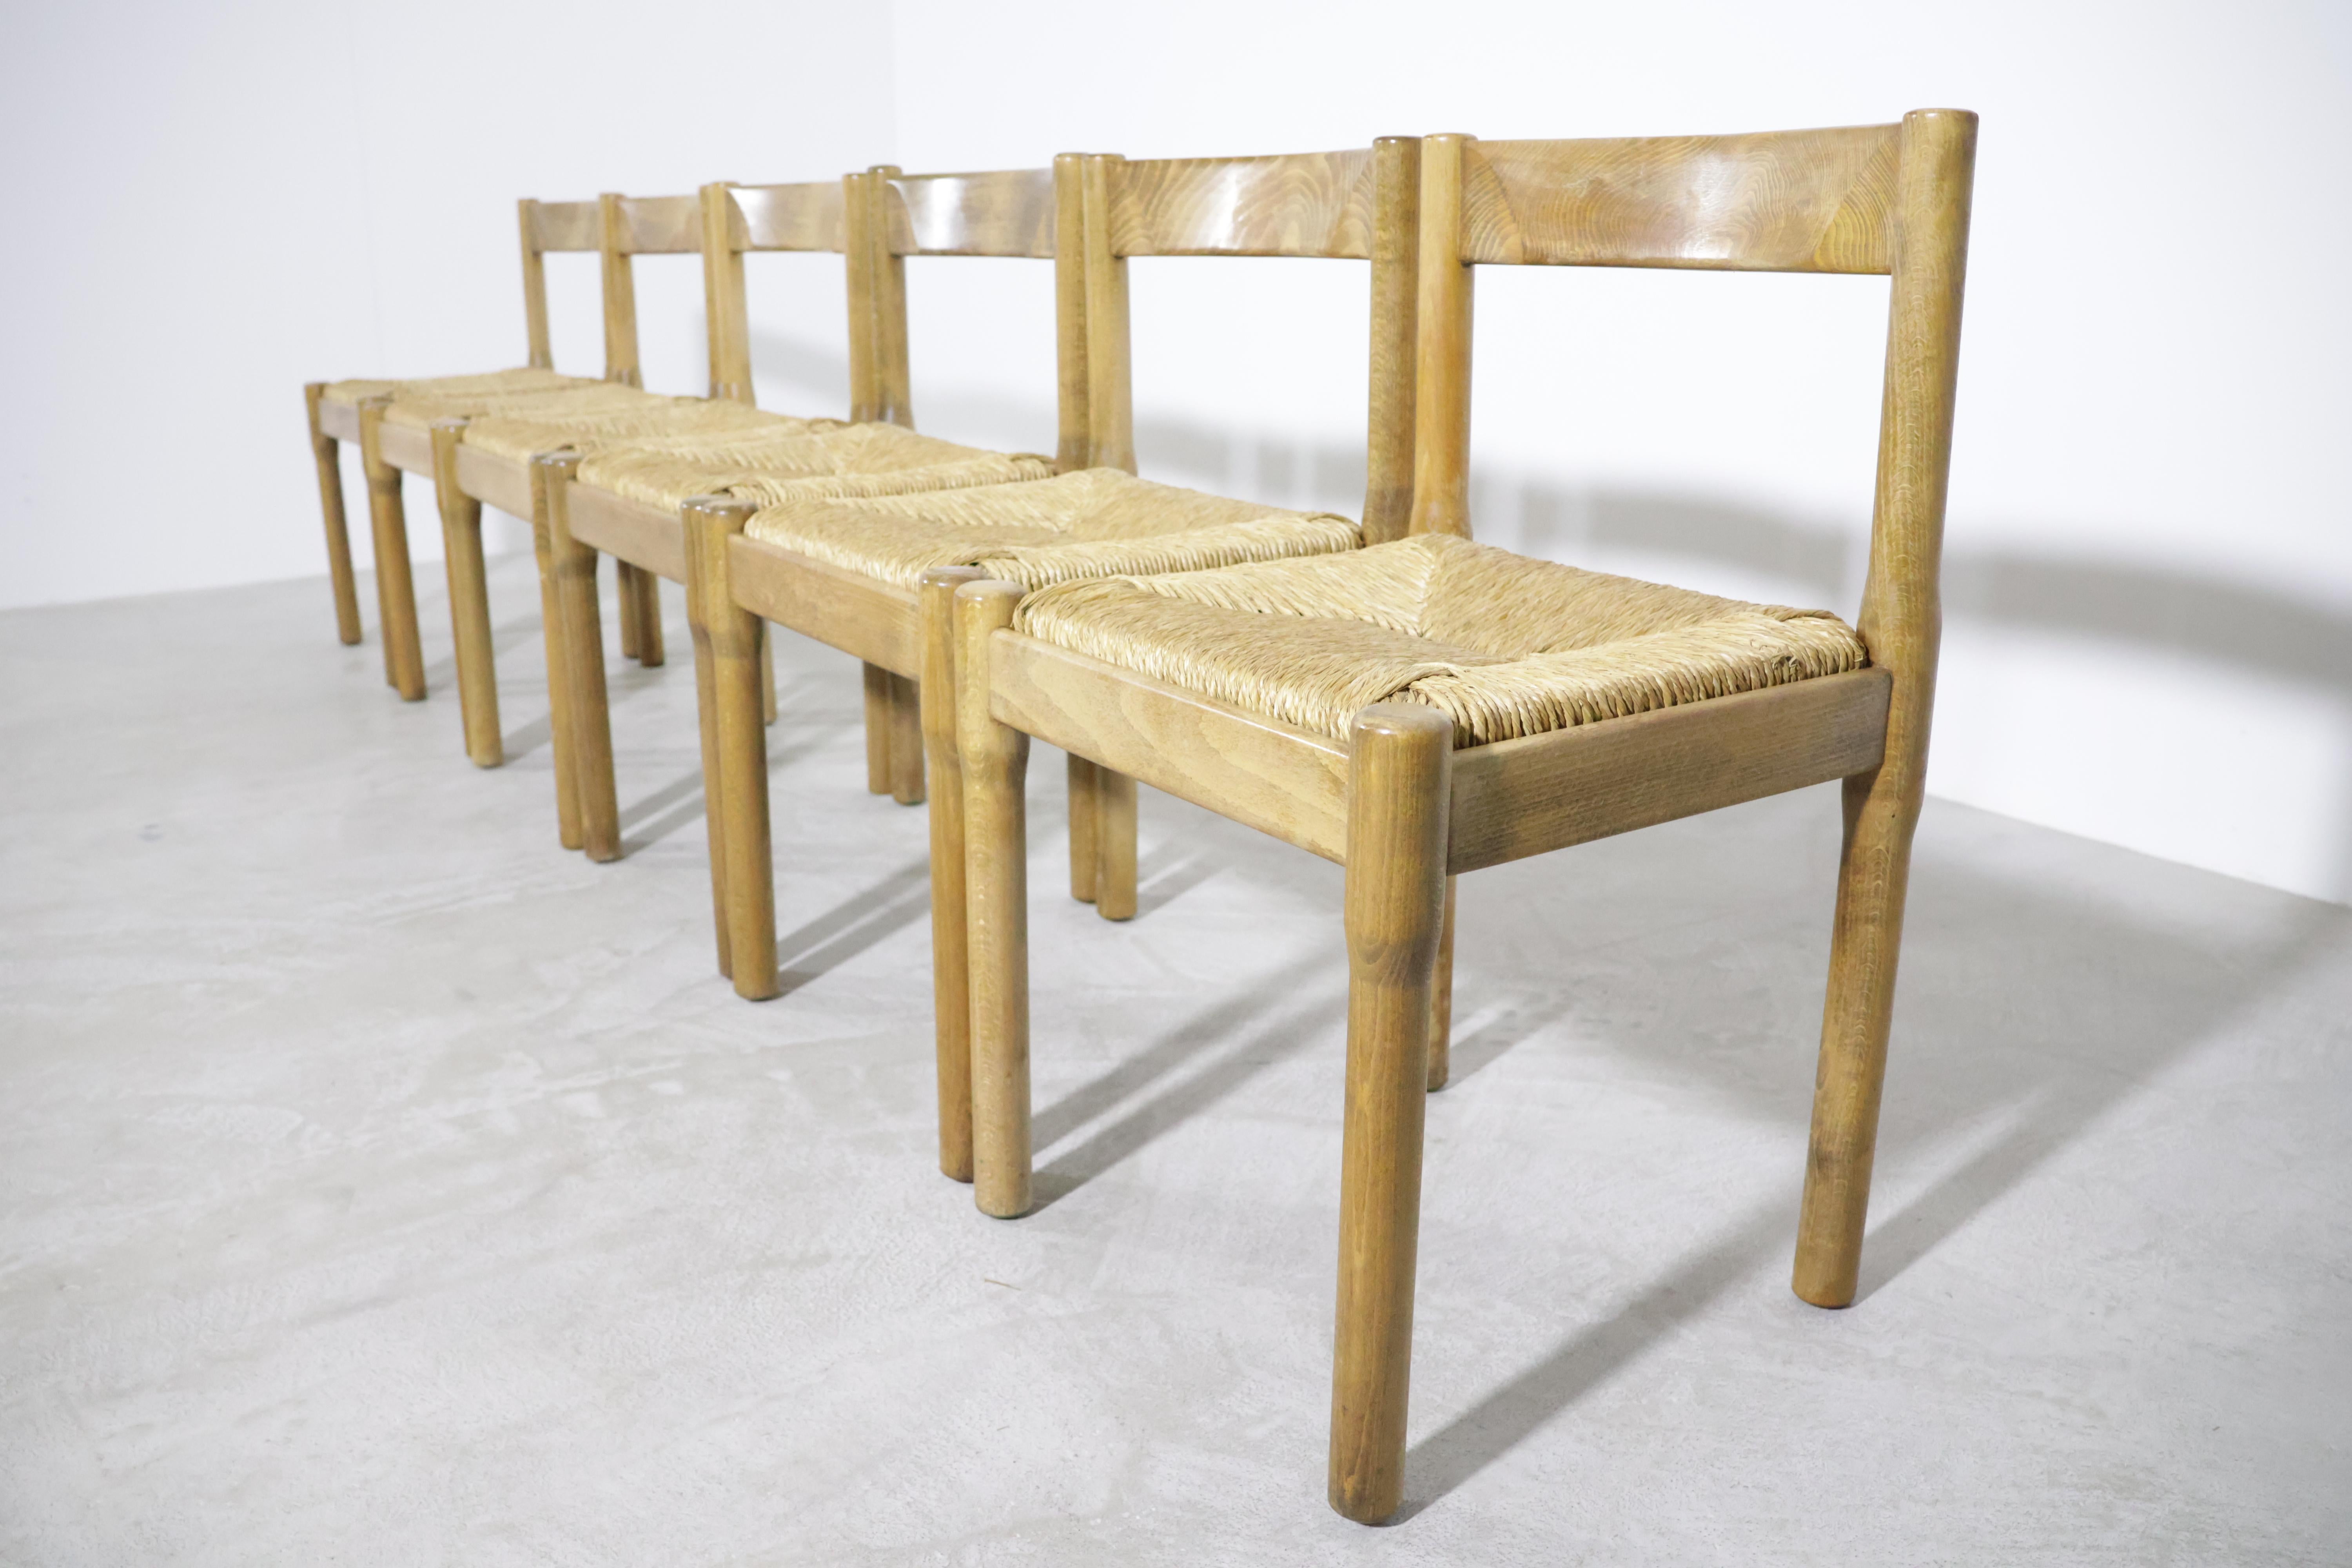 Magnifique ensemble de six chaises de salle à manger 'Carimate' par Vico Magistretti pour Mario Luigi Comi/Italie dans les années 60 !
La chaise 